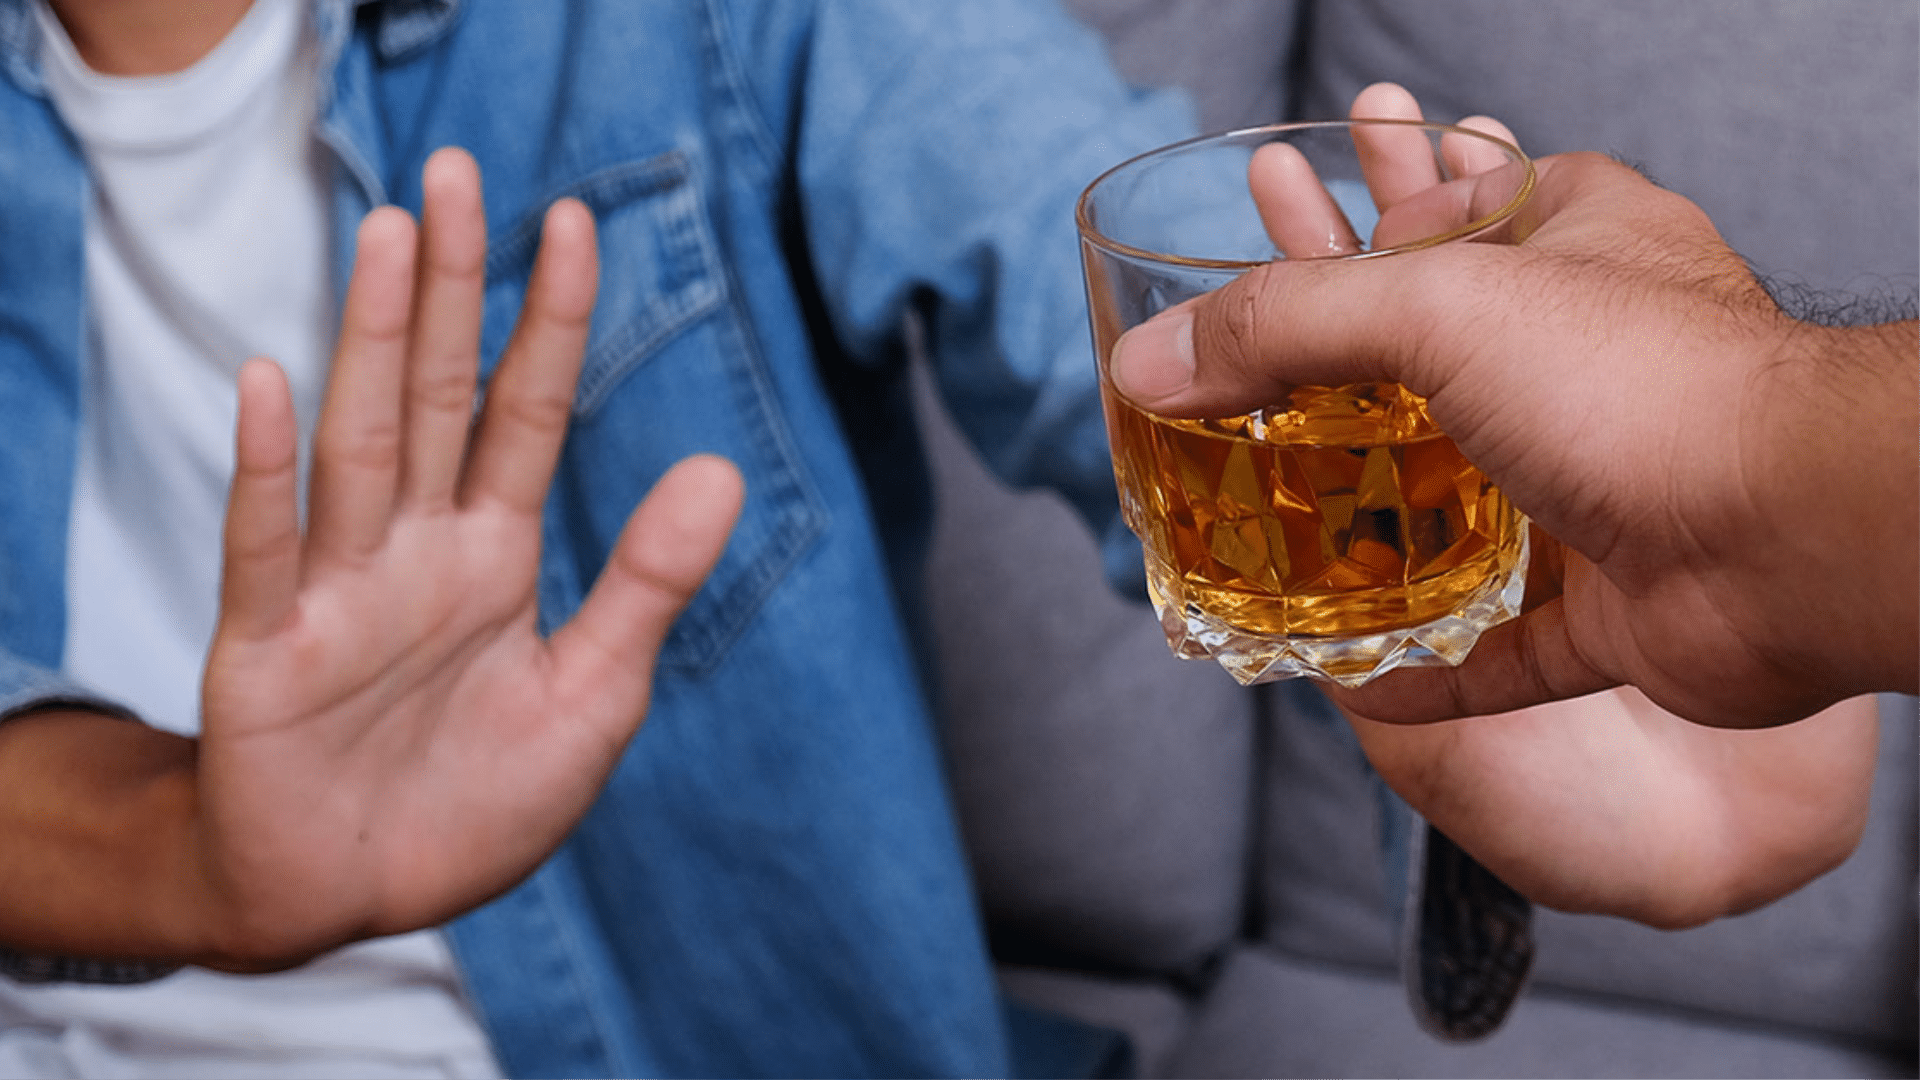 diminuir o consumo de álcool tendo vida social